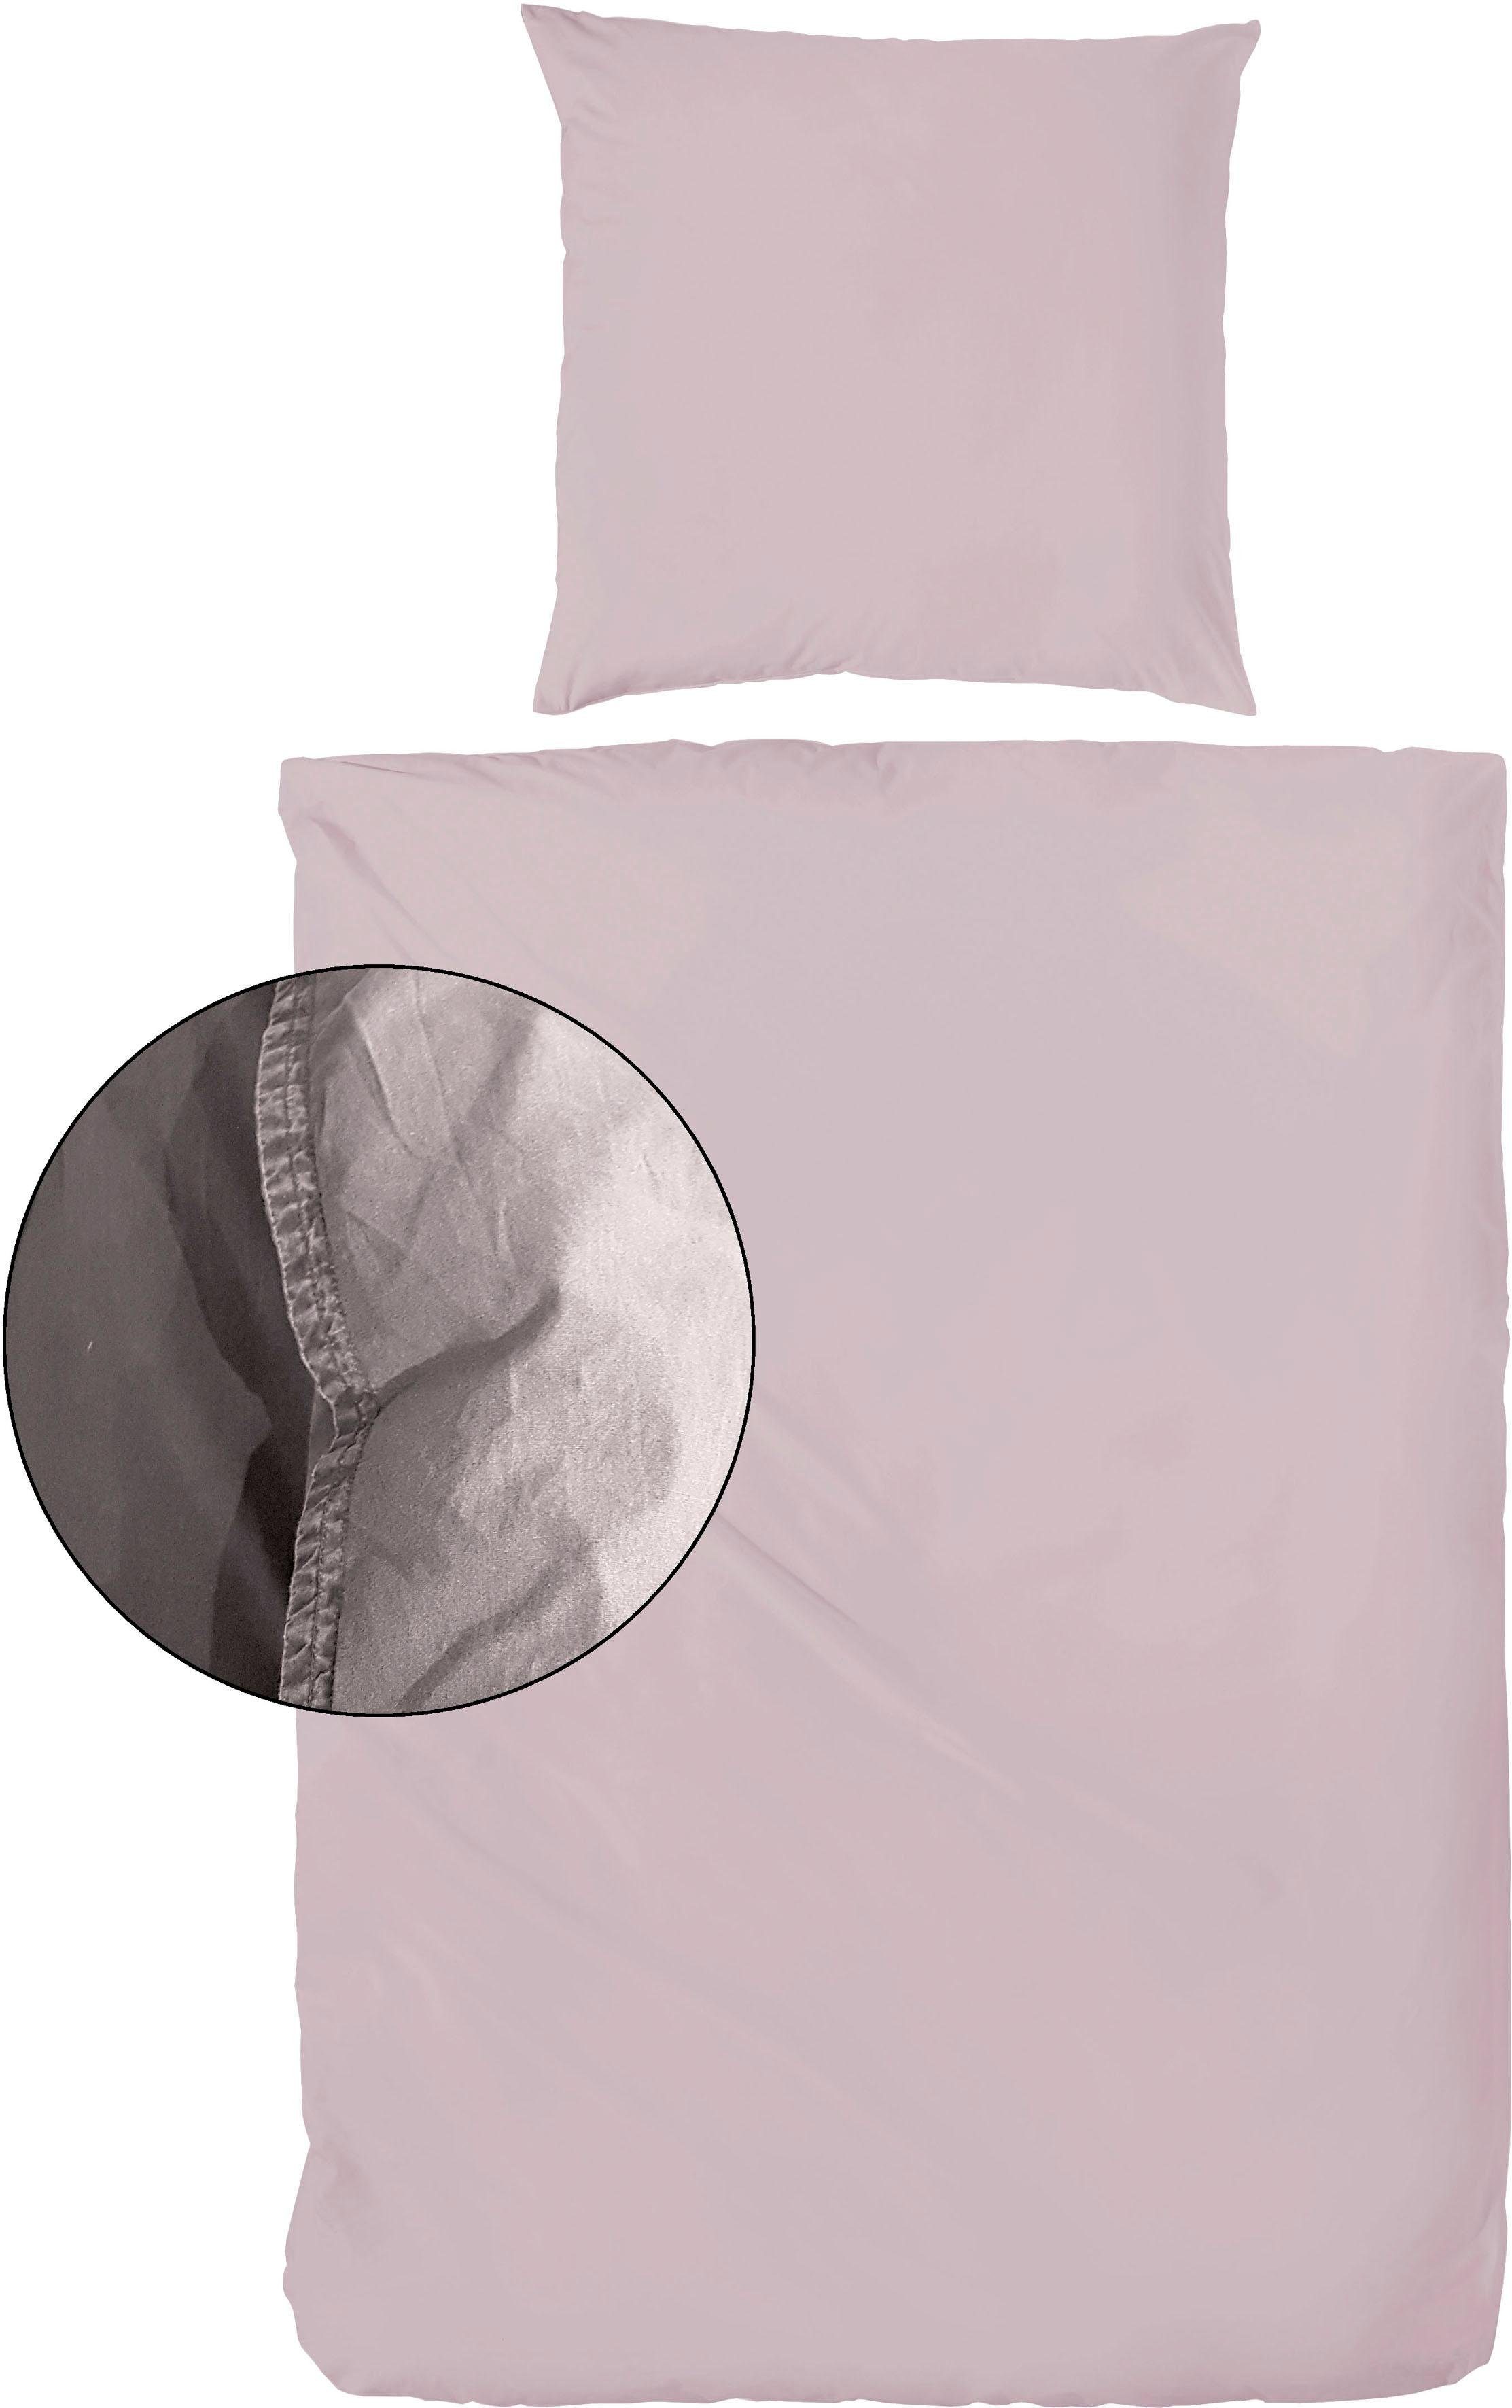 Bettwäsche Stone-Washed Renforcé, 200x200 Bettwäsche Primera, Baumwolle, 155x220 teilig, in Bettwäsche aus Gr. oder 135x200, feinem Knitterlook 2 cm, in rosa